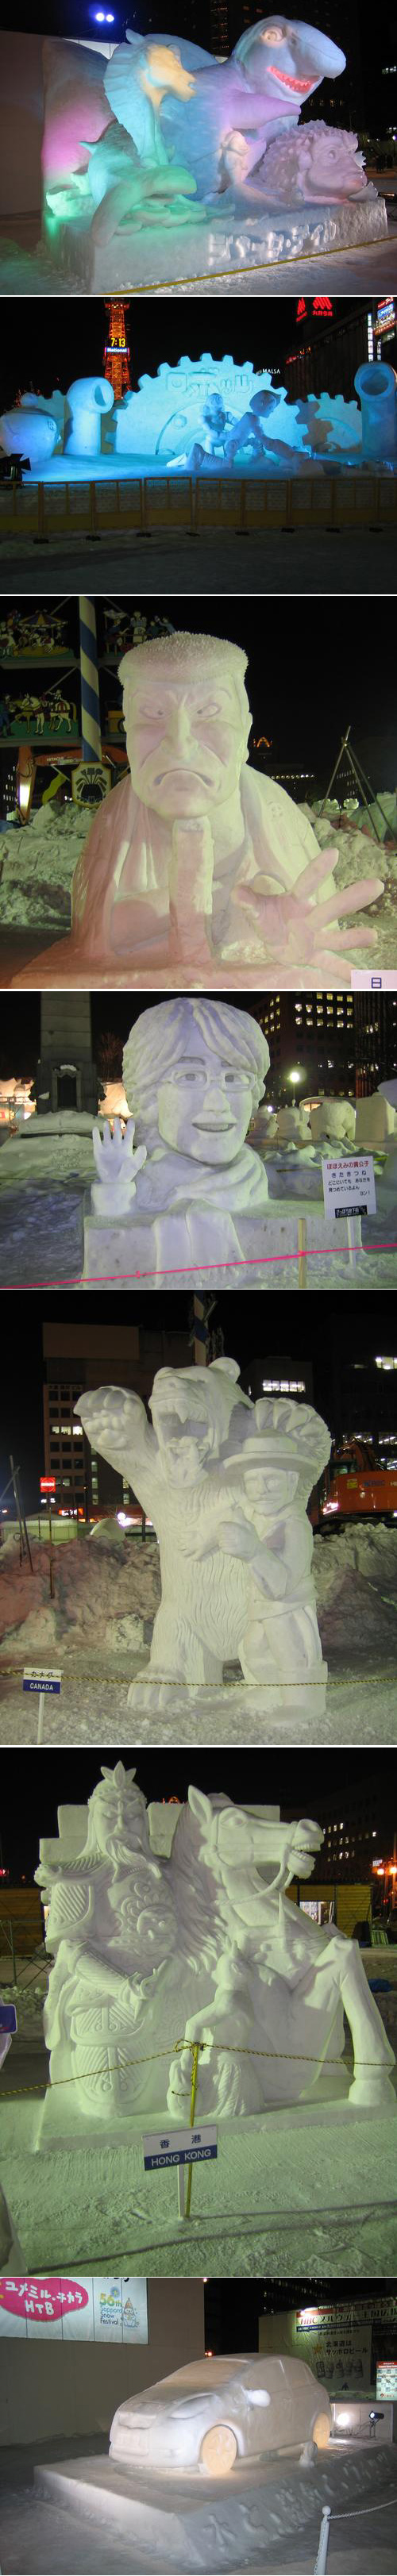 des sculptures de neige